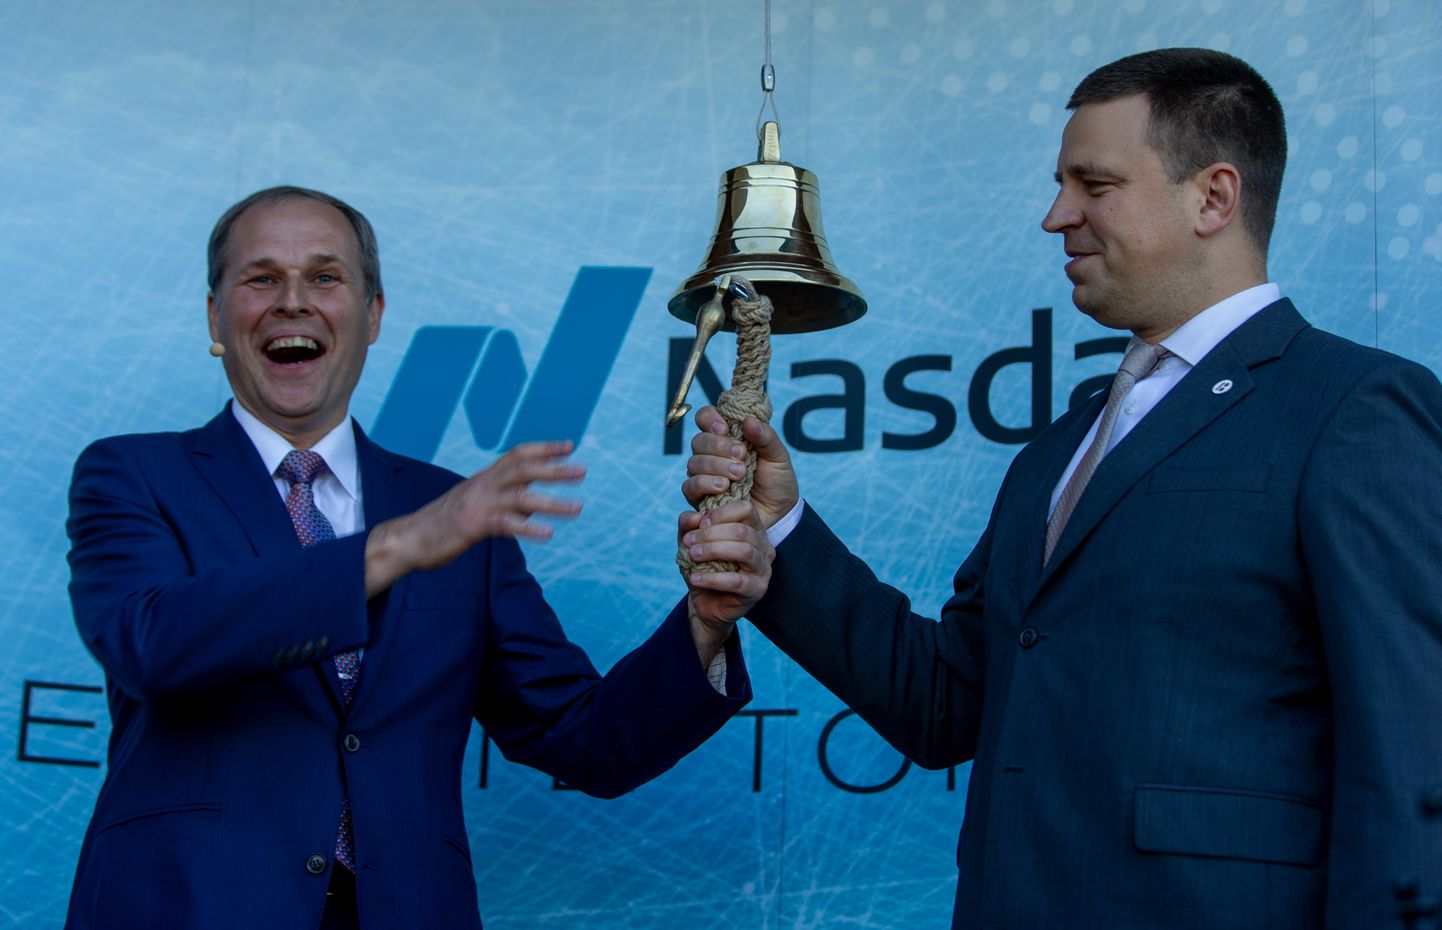 Tallinna Sadama juht Valdo Kalm ja ekspeaminister Jüri Ratas helistamas esimesel börsipäeval Tallinna Sadama börsikella.